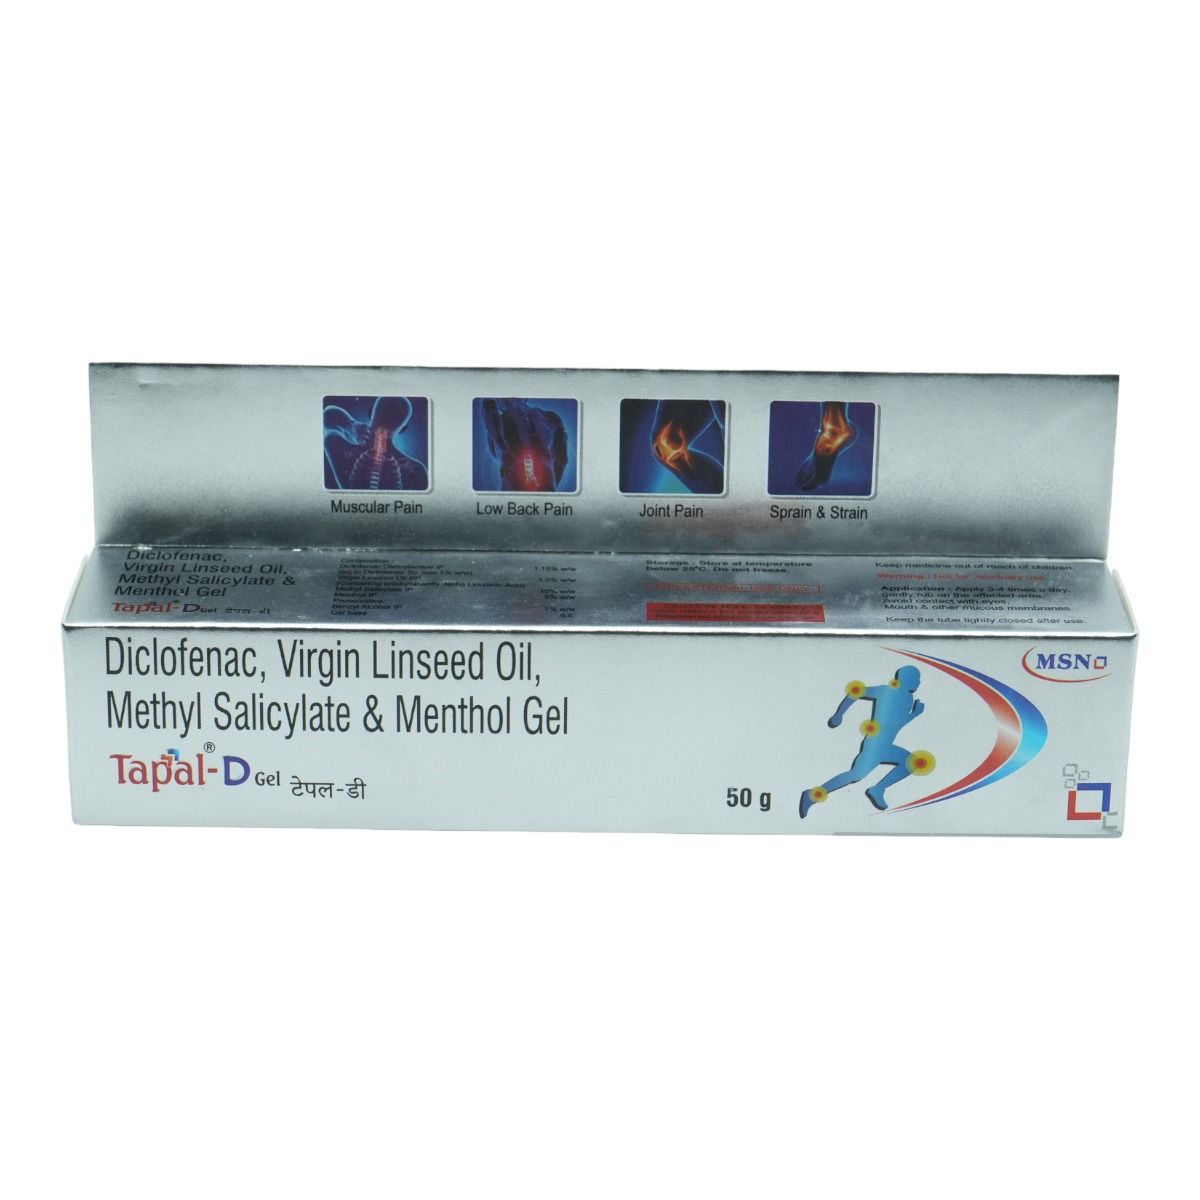 Tapal-D Gel 50 gm, Pack of 1 GEL